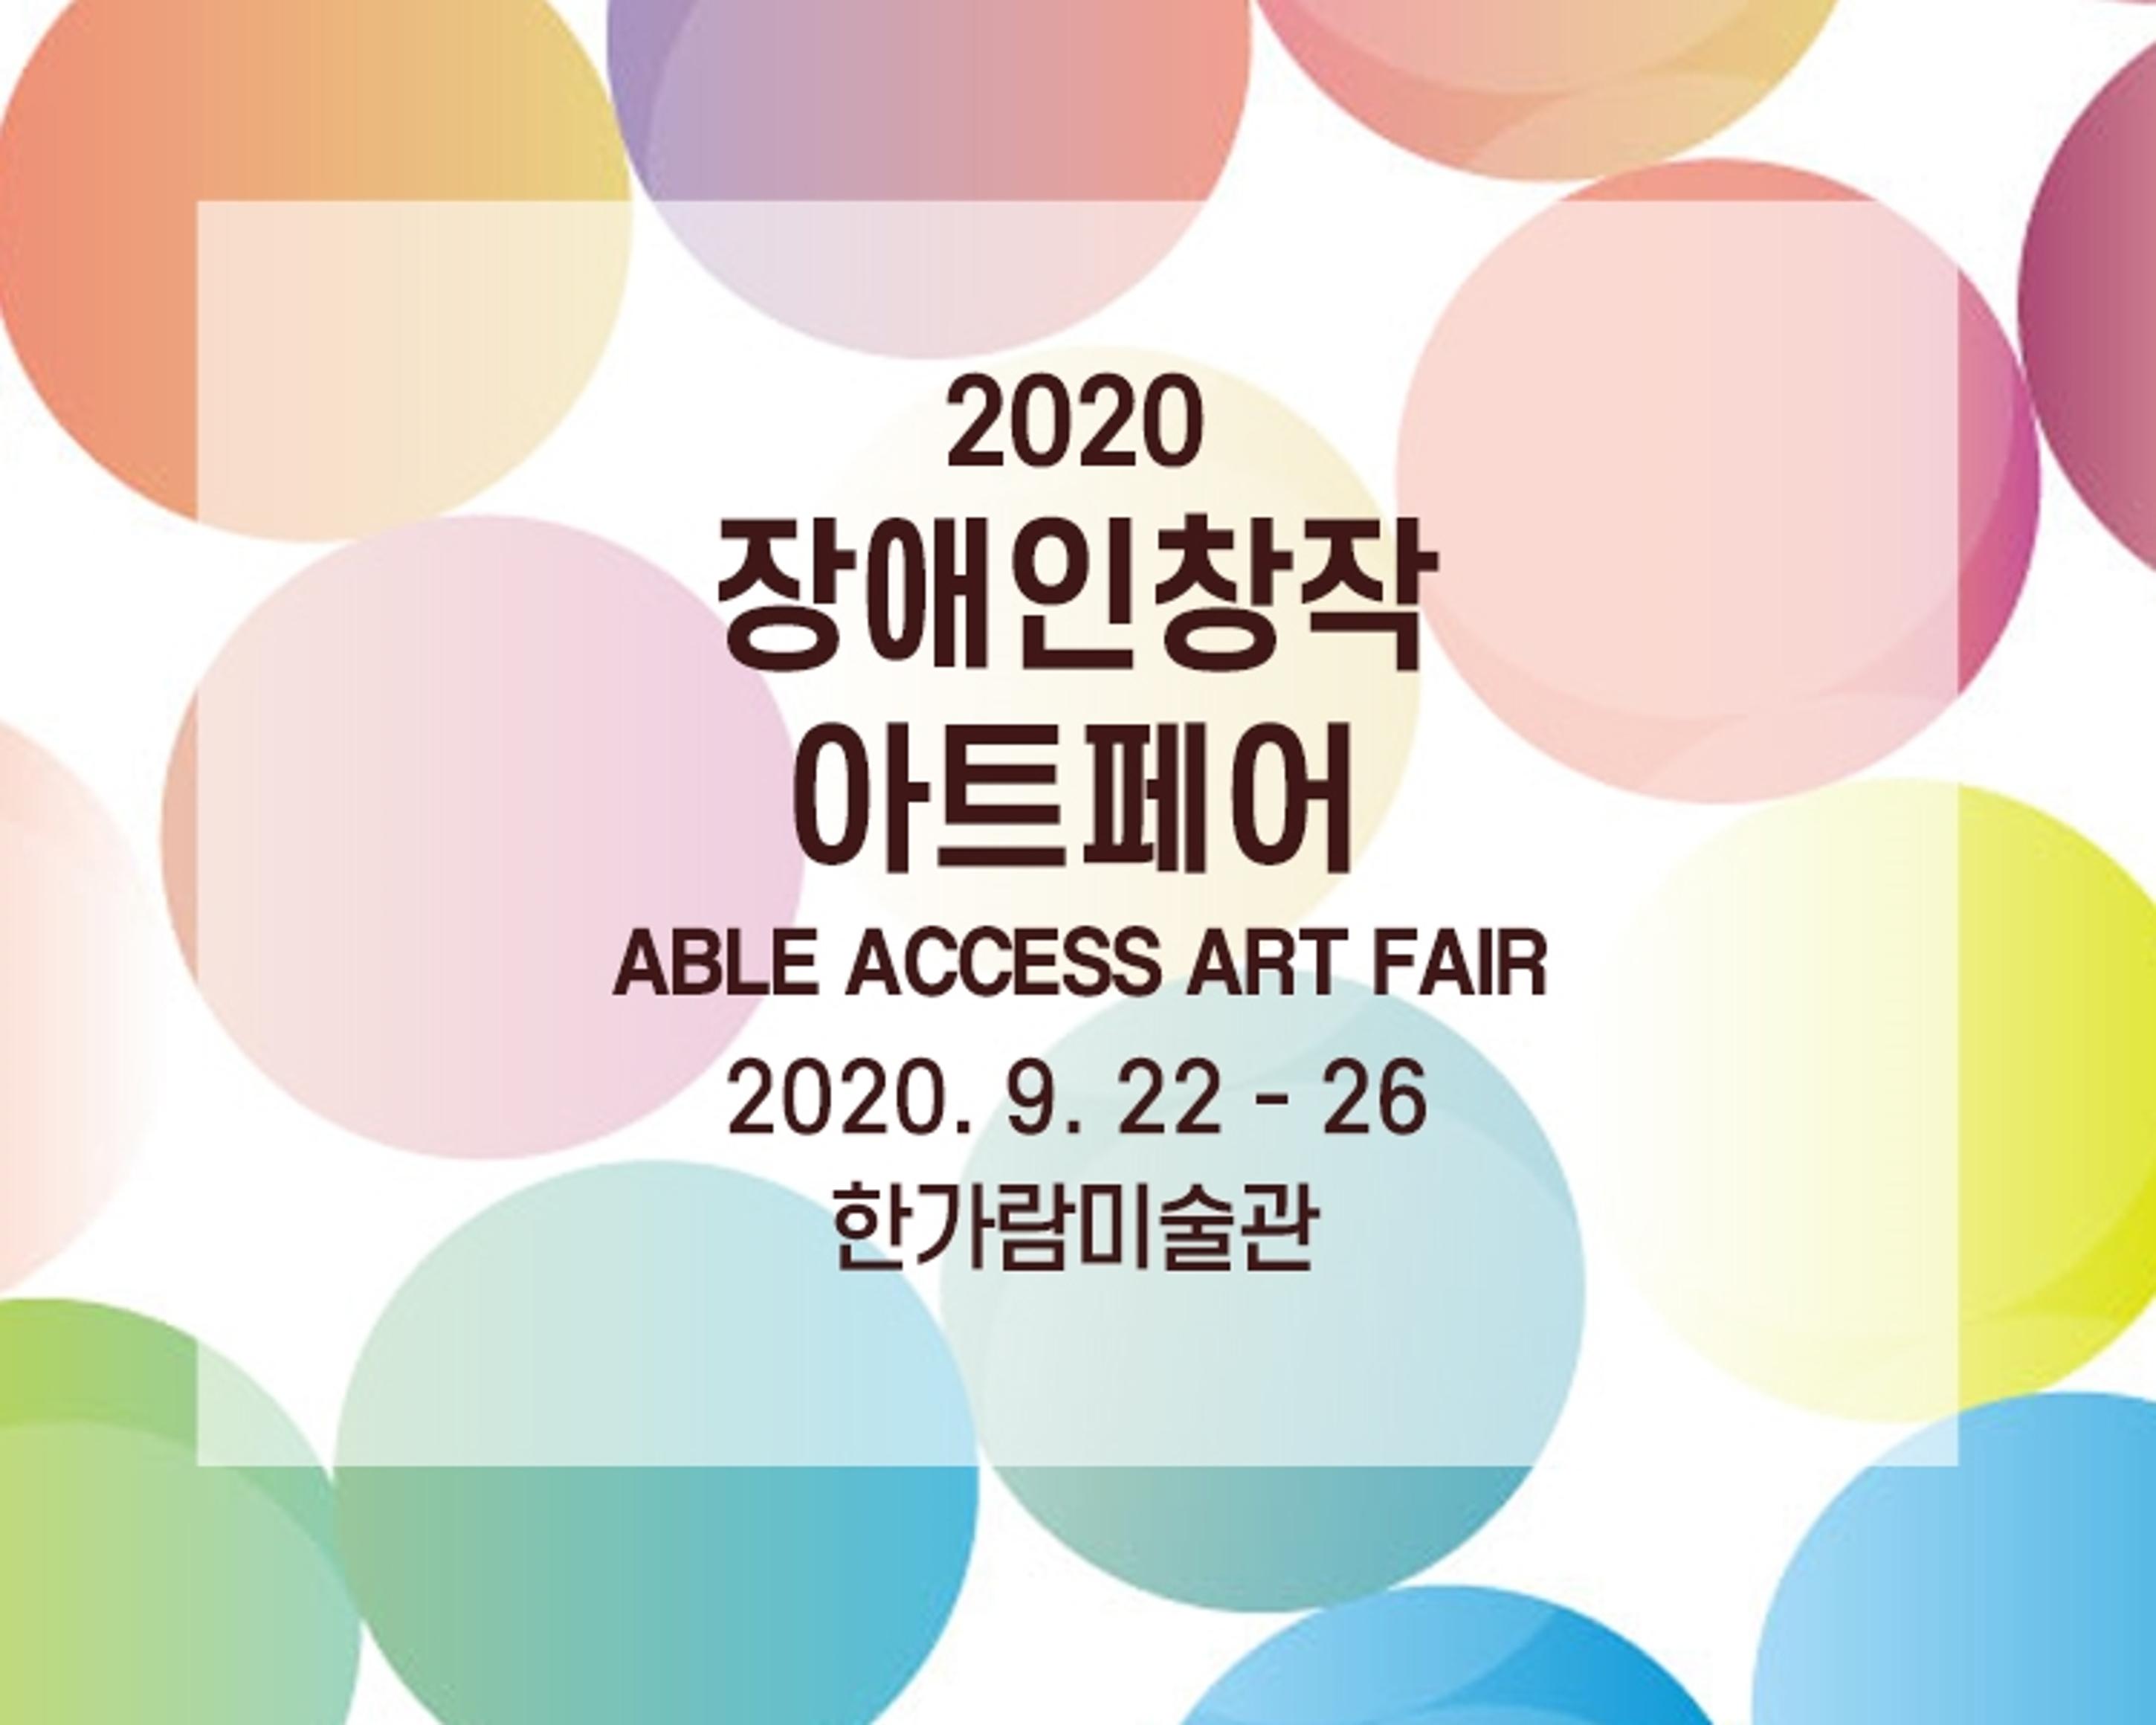 2020 장애인창작아트페어 <br>
ABLE ACCESS ART FAIR <br>
2020. 9. 22 - 26 <br>
한가람미술관